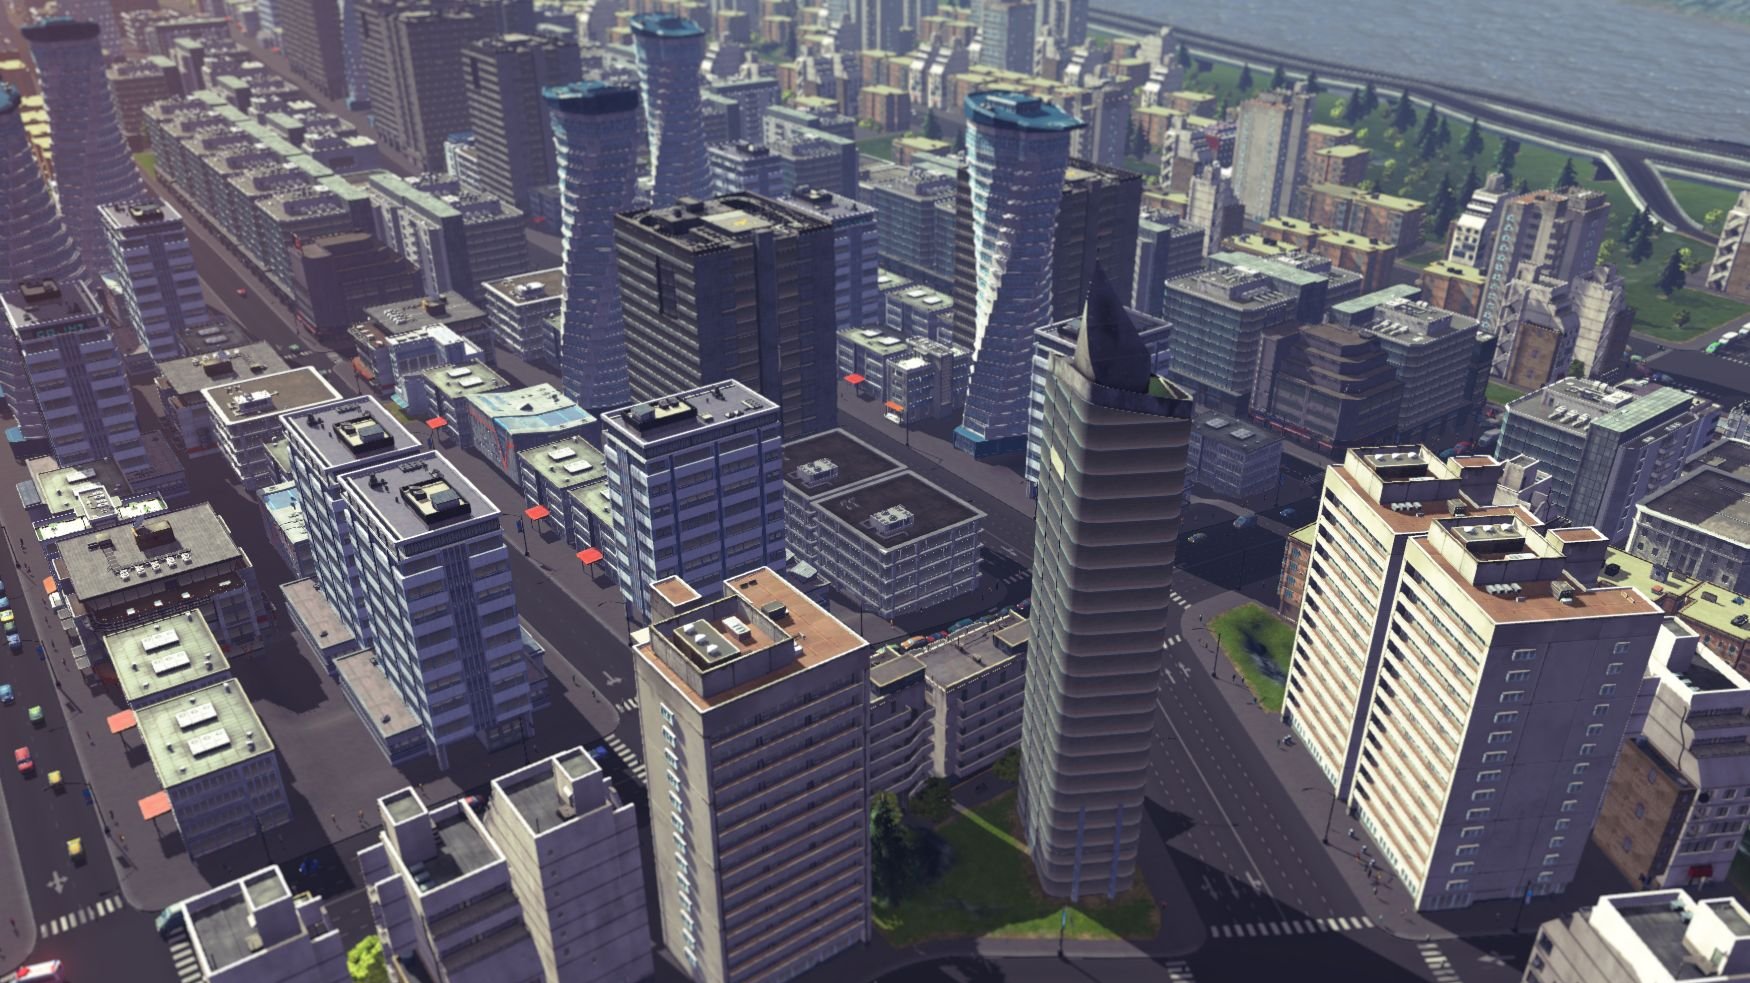 download Cities: Skylines 2